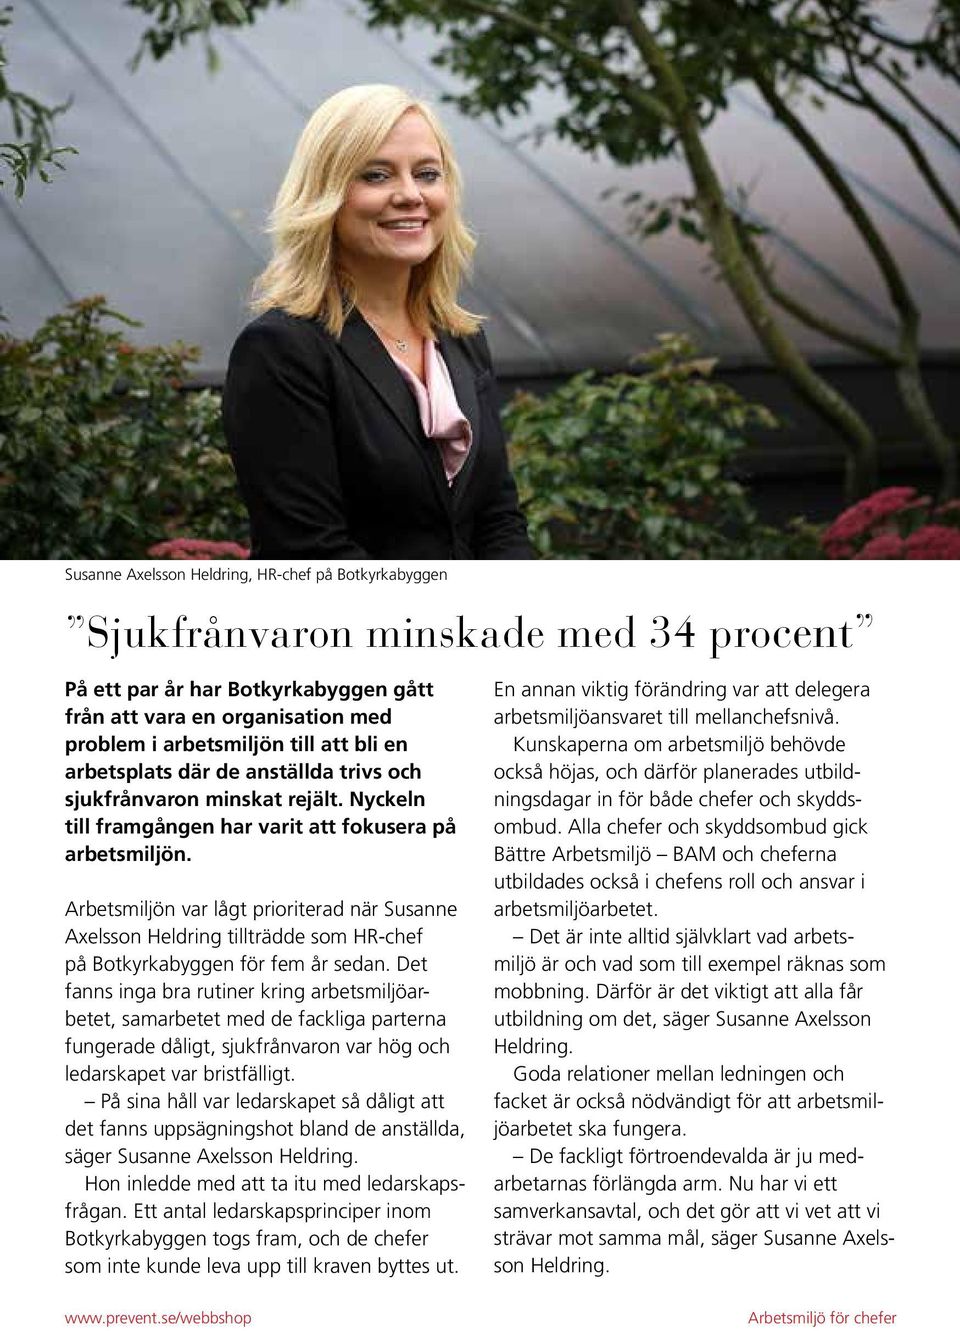 Arbetsmiljön var lågt prioriterad när Susanne Axelsson Heldring tillträdde som HR-chef på Botkyrkabyggen för fem år sedan.